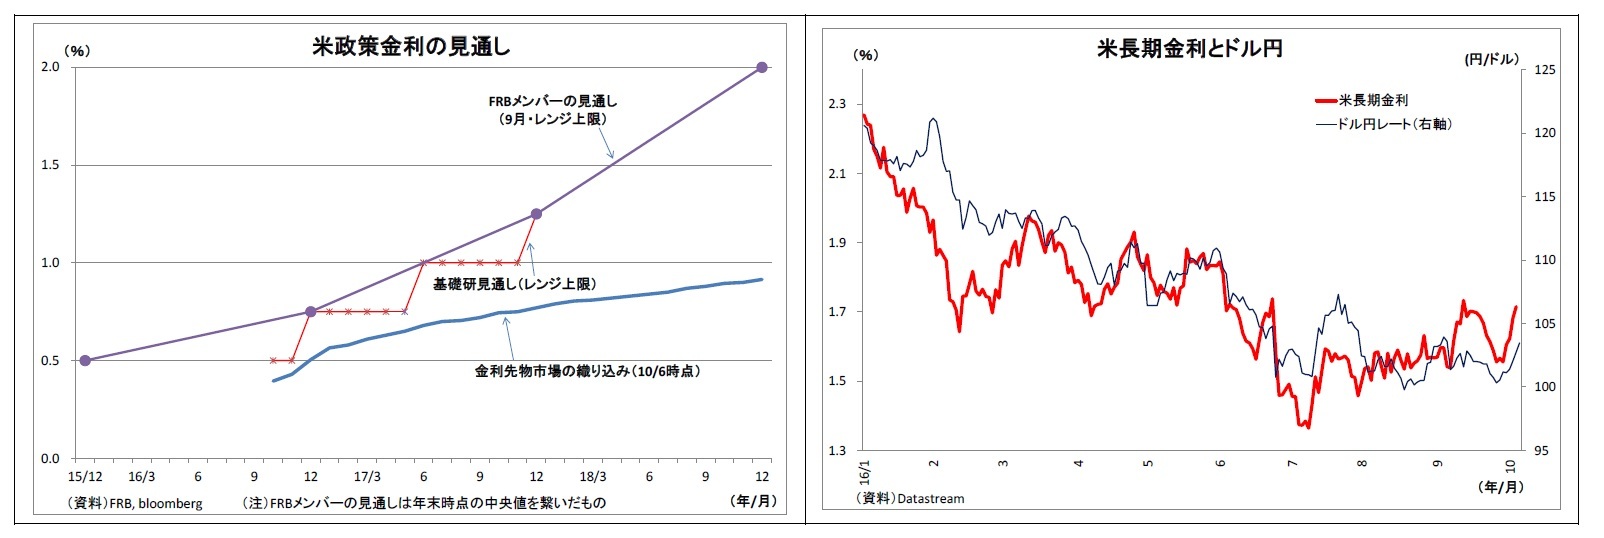 米政策金利の見通し/米長期金利とドル円